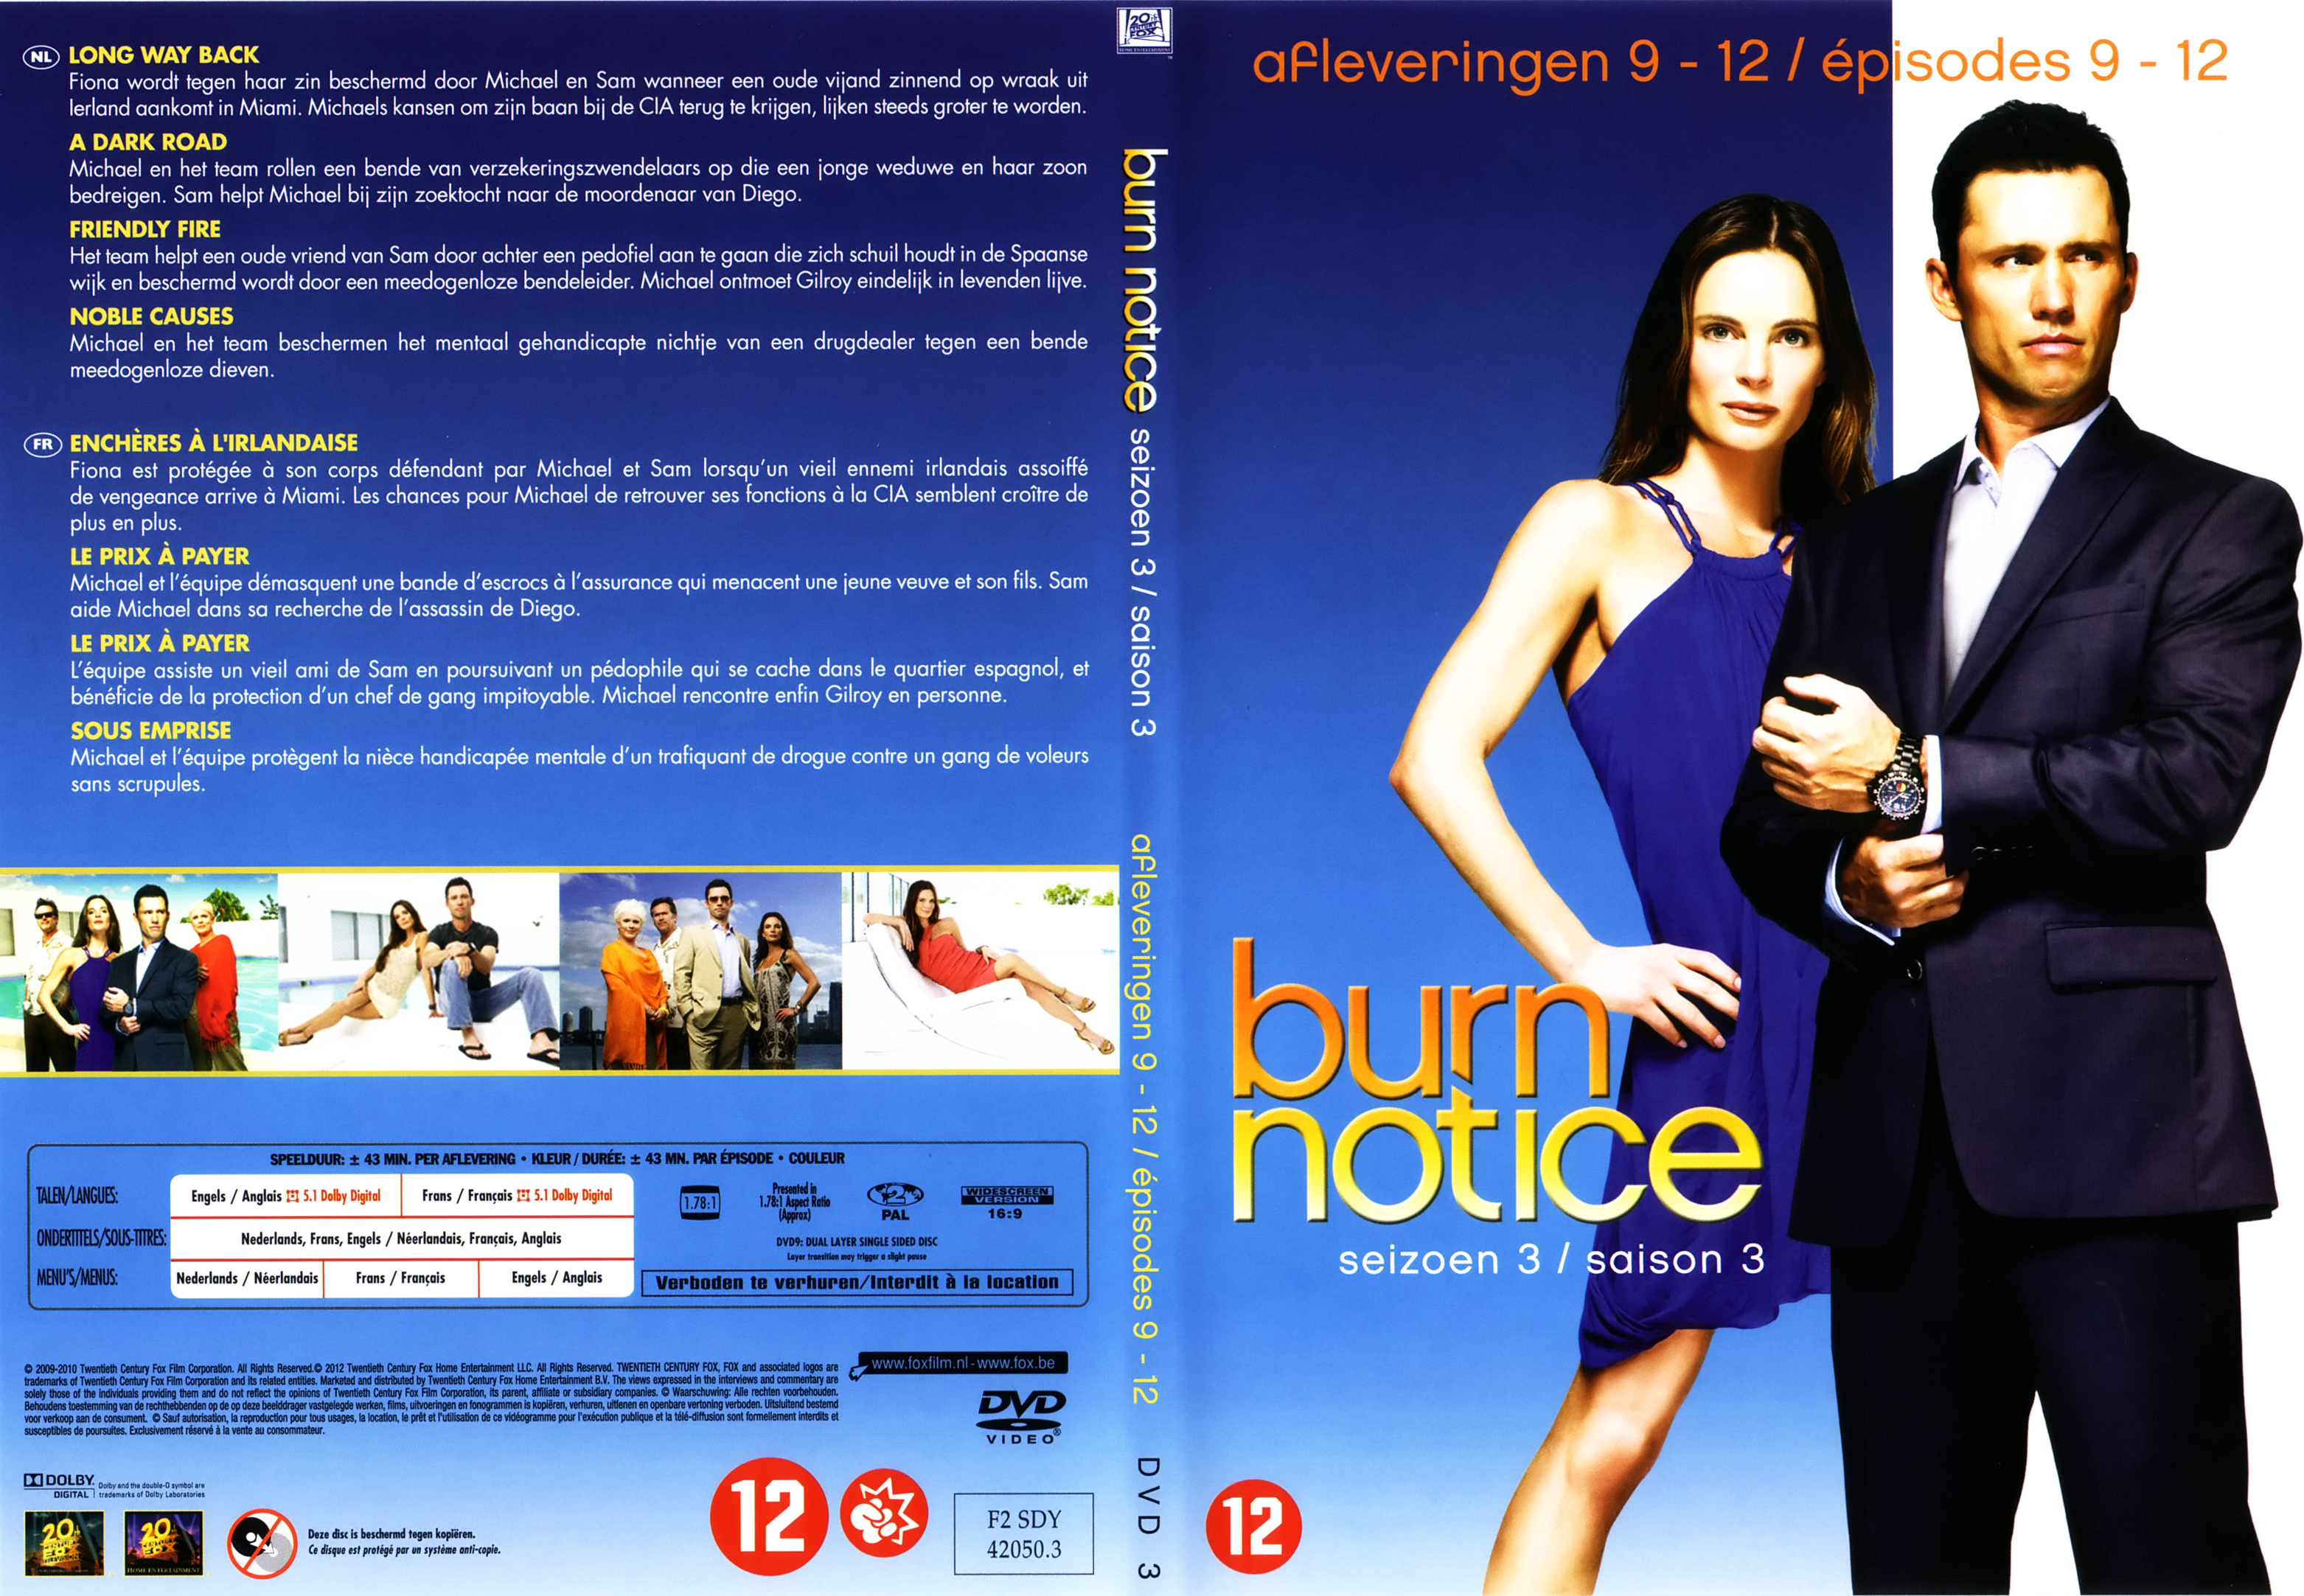 Jaquette DVD Burn notice Saison 3 DVD 3